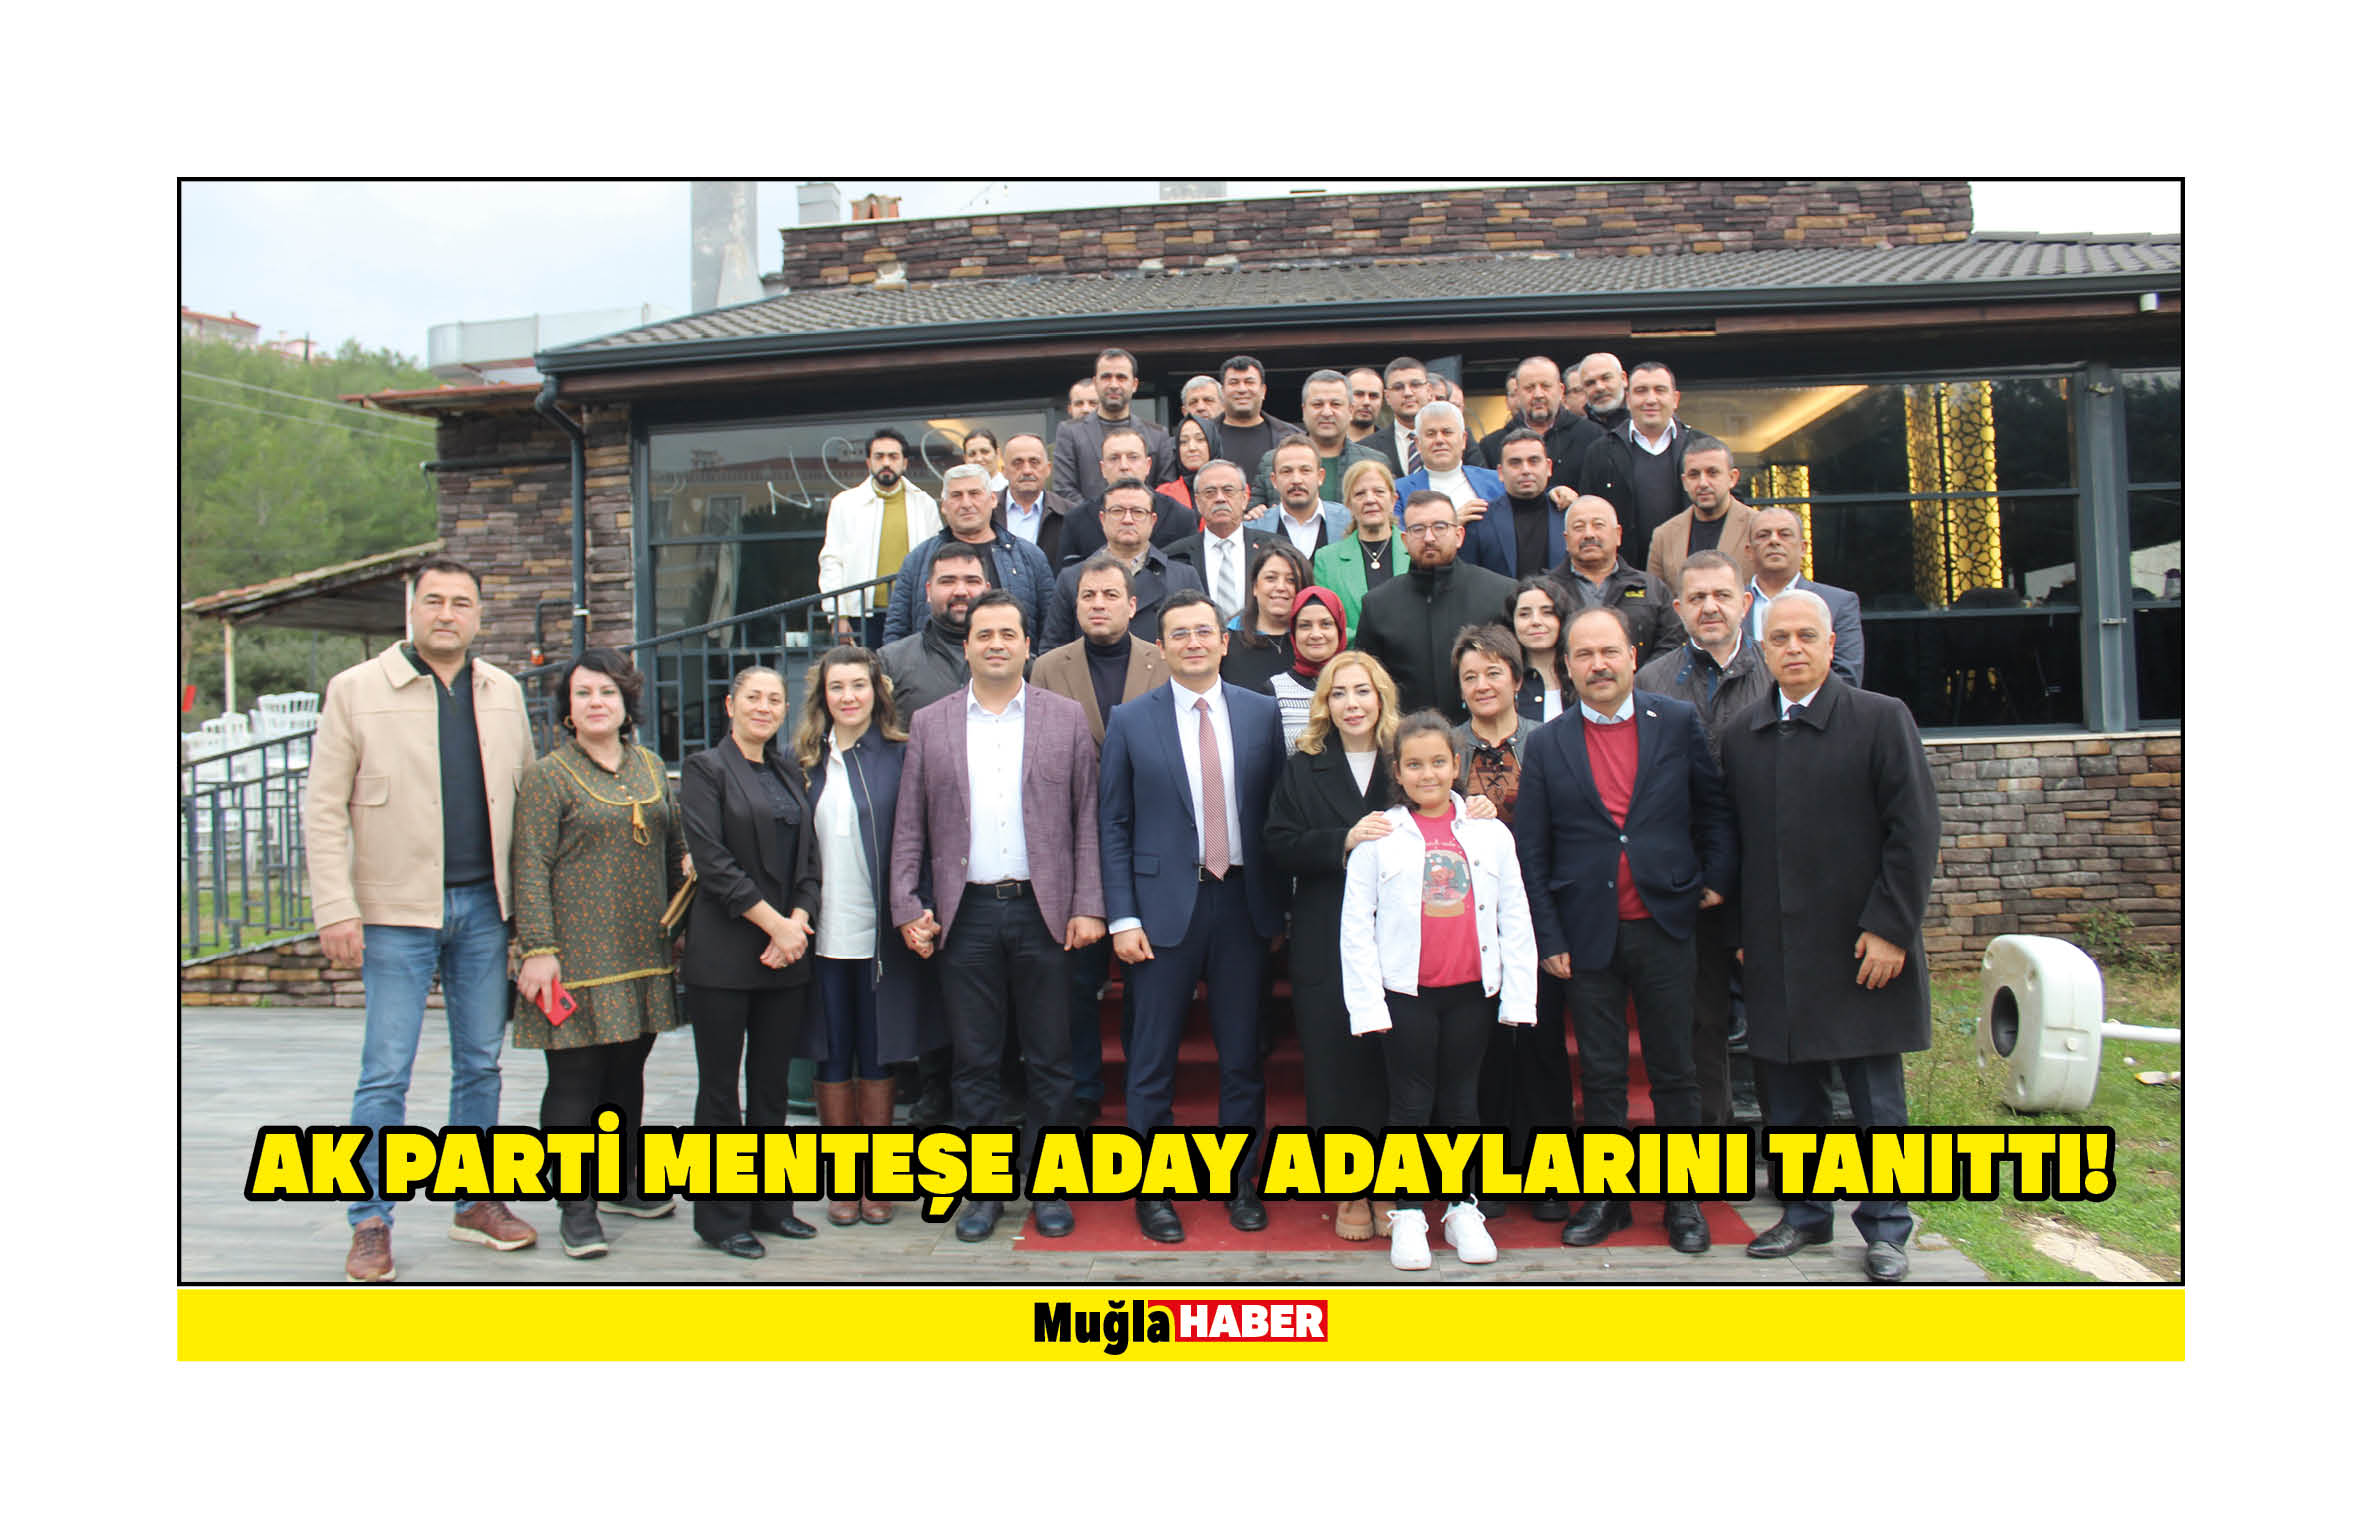 AK Parti Menteşe aday adaylarını tanıttı!